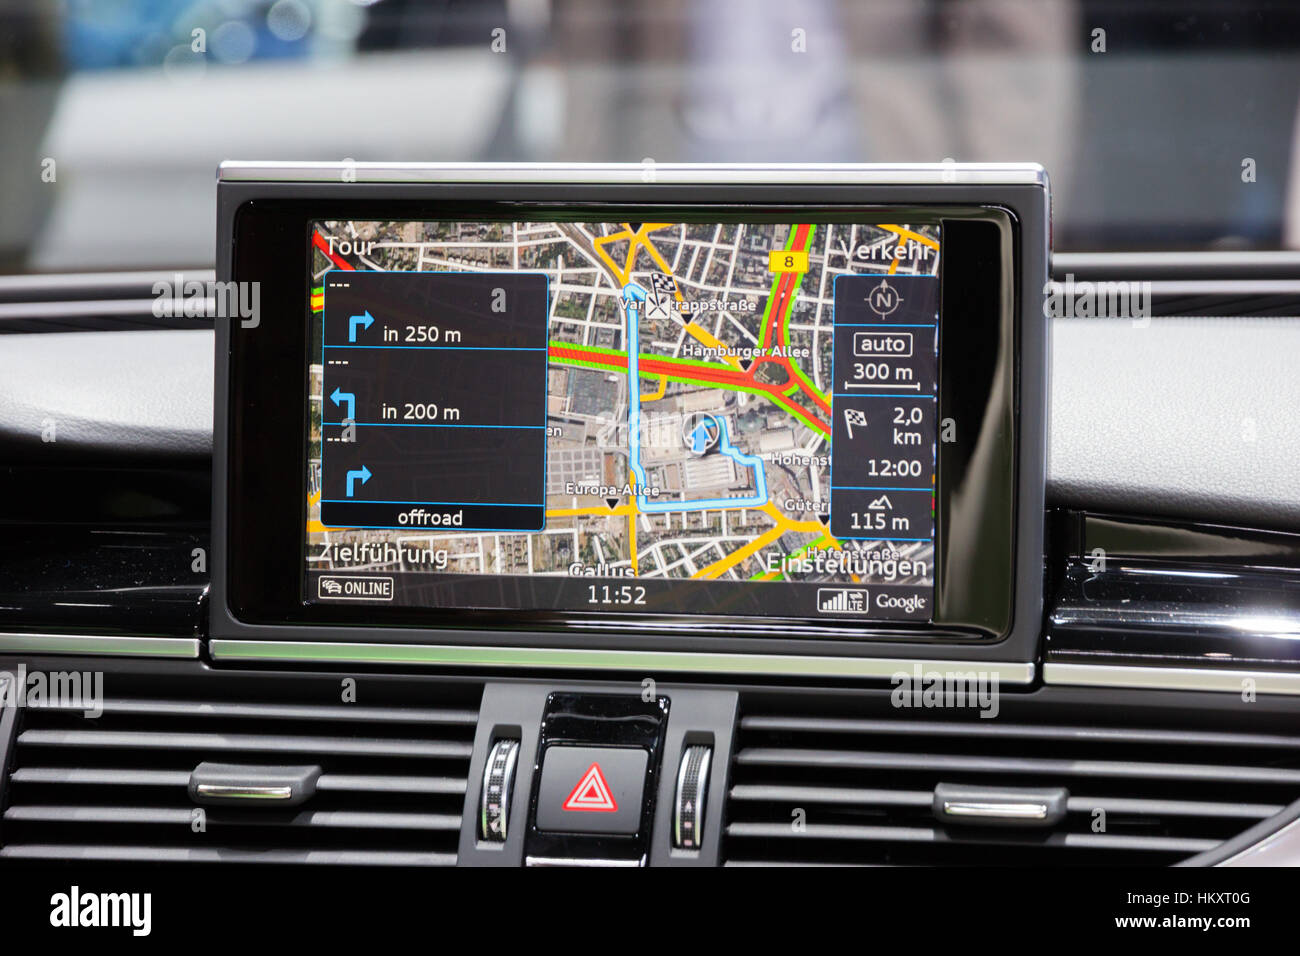 Francfort, Allemagne - Sep 16, 2015 location : la navigation dans l'Audi RS7 présenté à l'IAA 2015. Banque D'Images